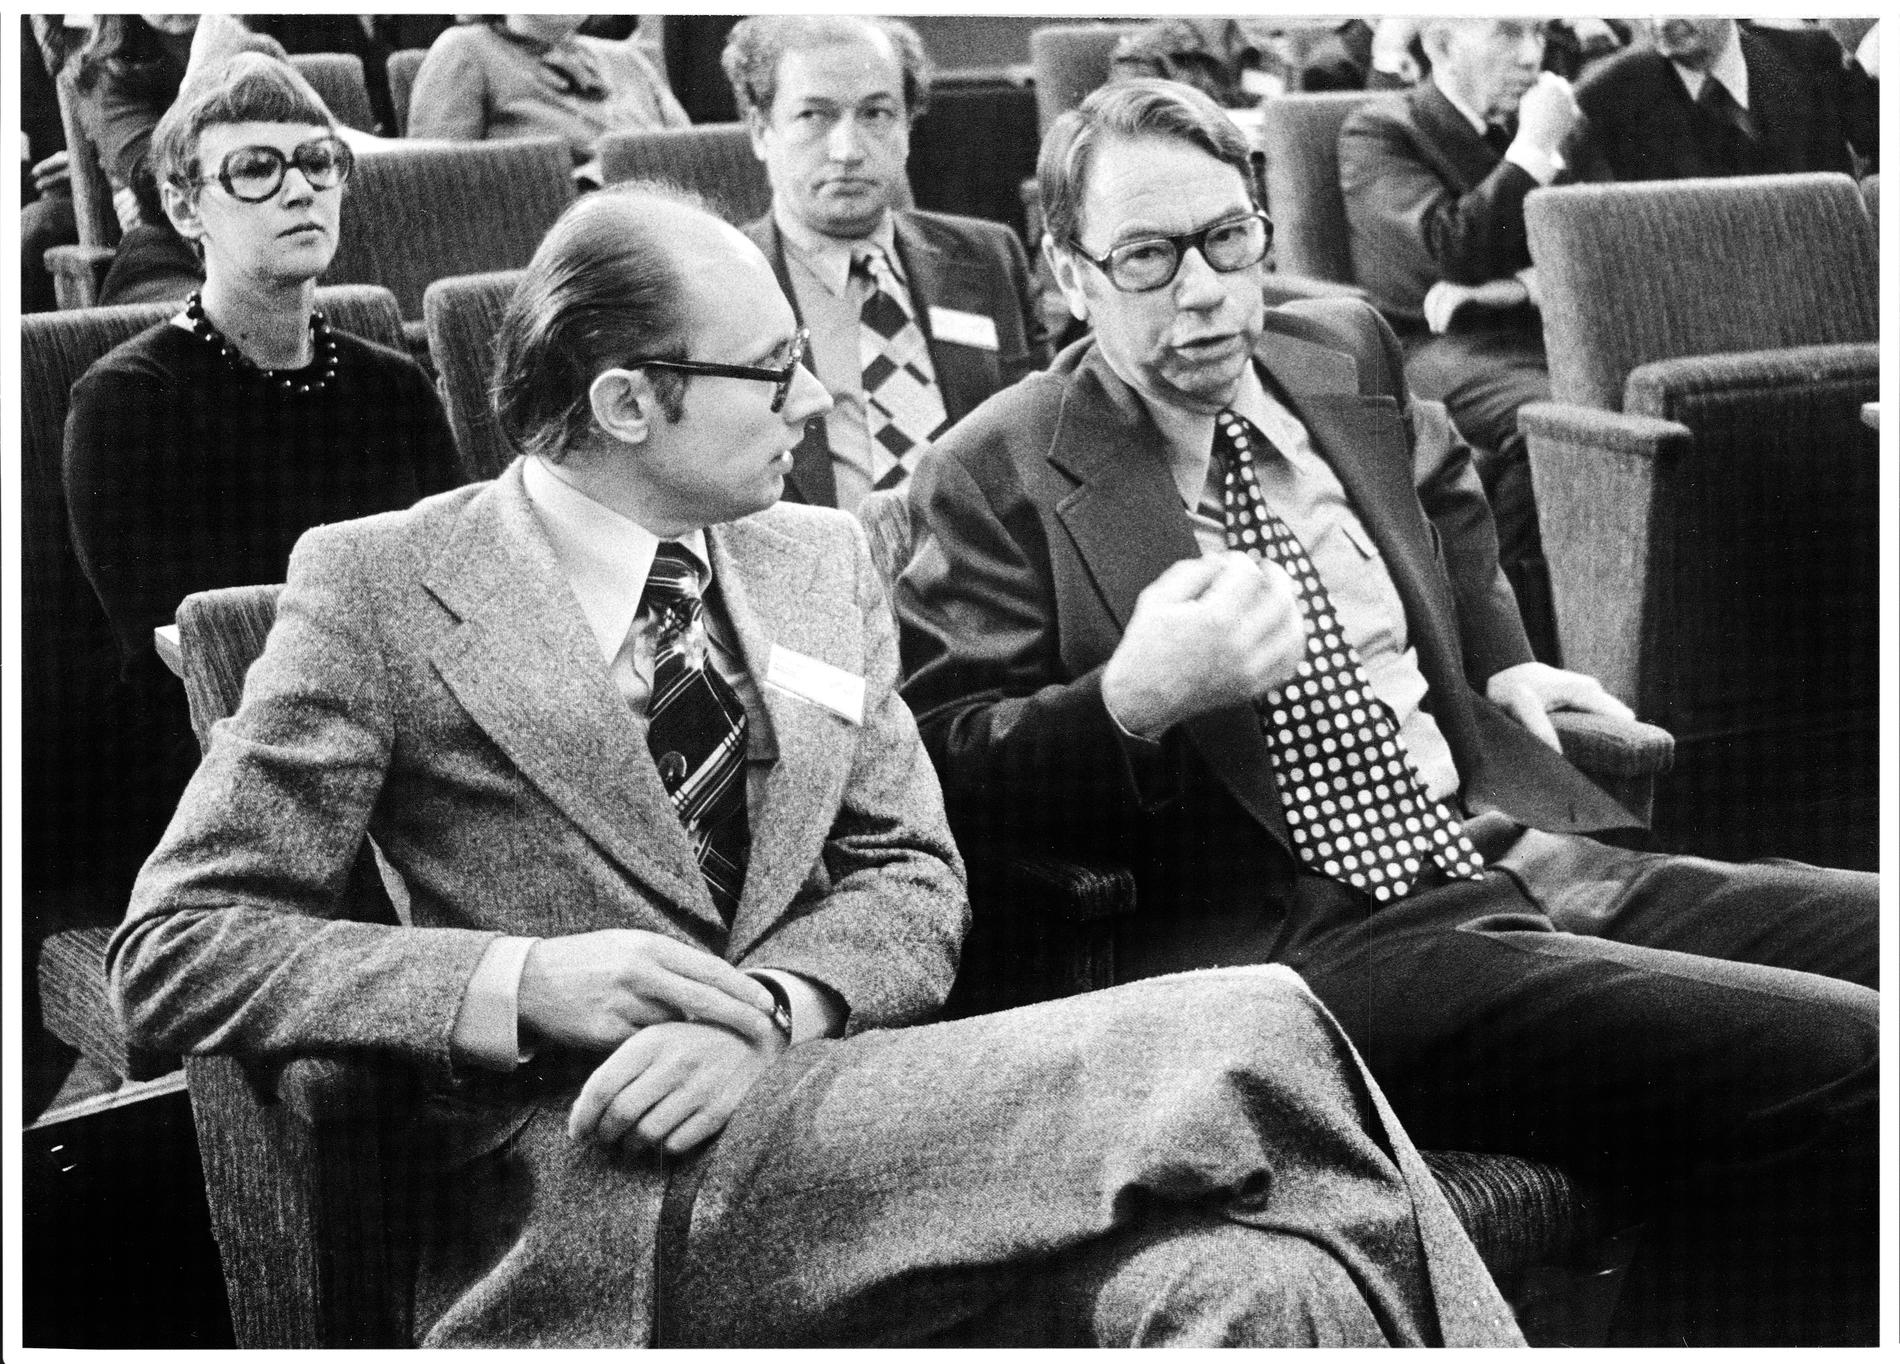 Per Ahlmark ihop med Gunnar Helén, under FP:s landsmöte 1974 då Ahlmark utsågs som efterträdare till Helén. 